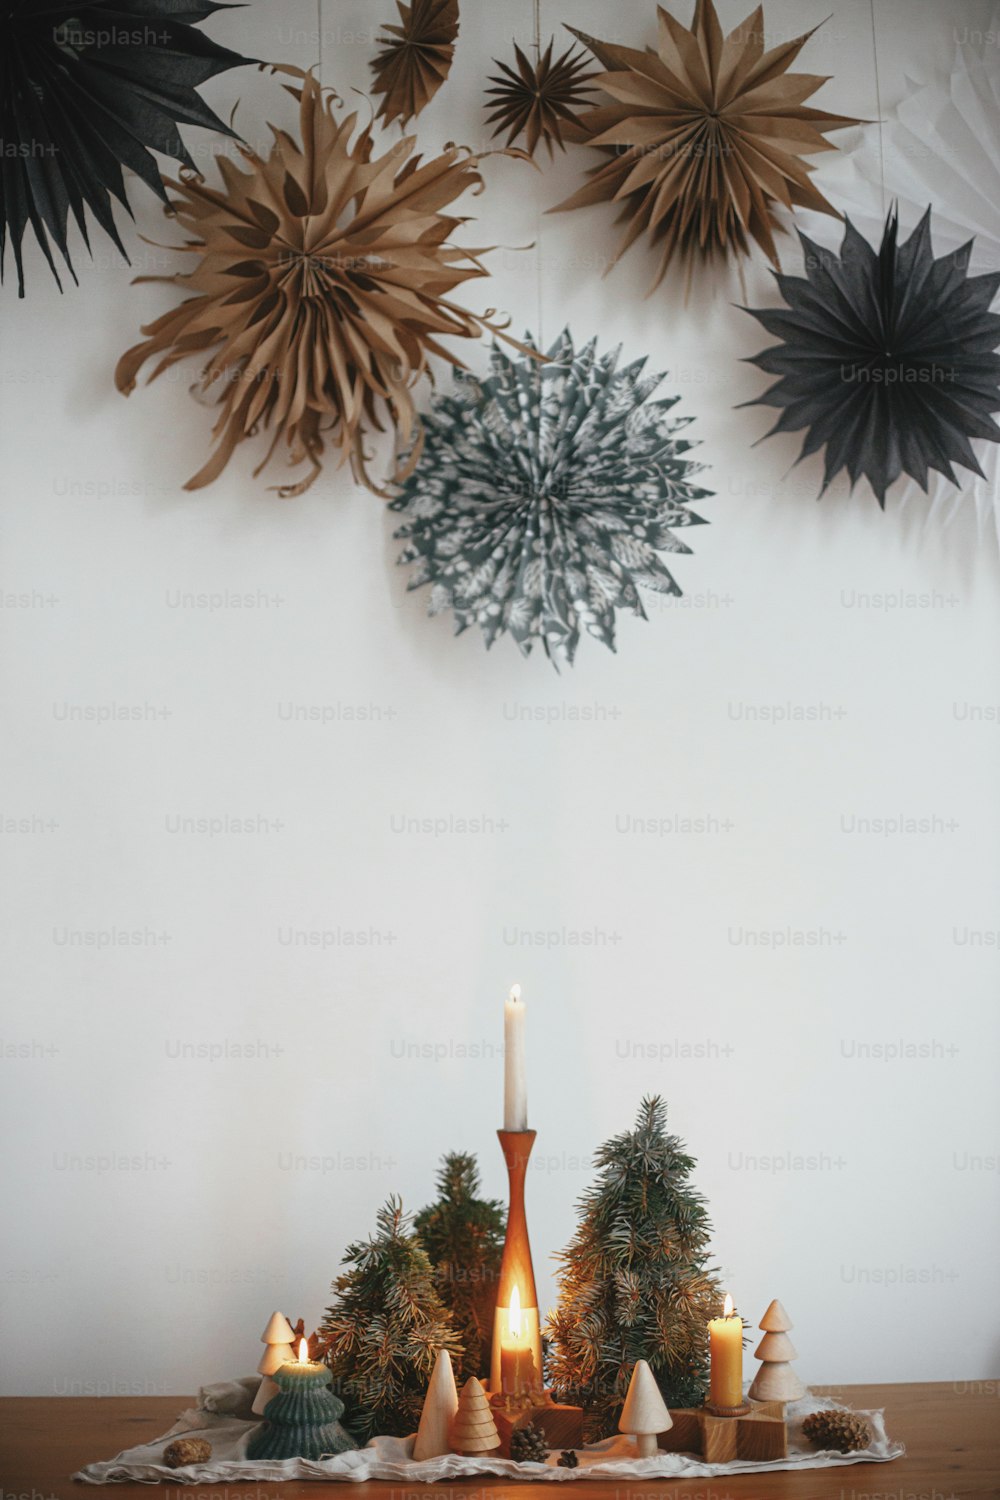 Velas de Natal elegantes e decorações de árvores na mesa de madeira no fundo da parede branca com grandes estrelas de papel. Decoração de férias artesanal. Tempo de inverno atmosférico. Feliz Natal!